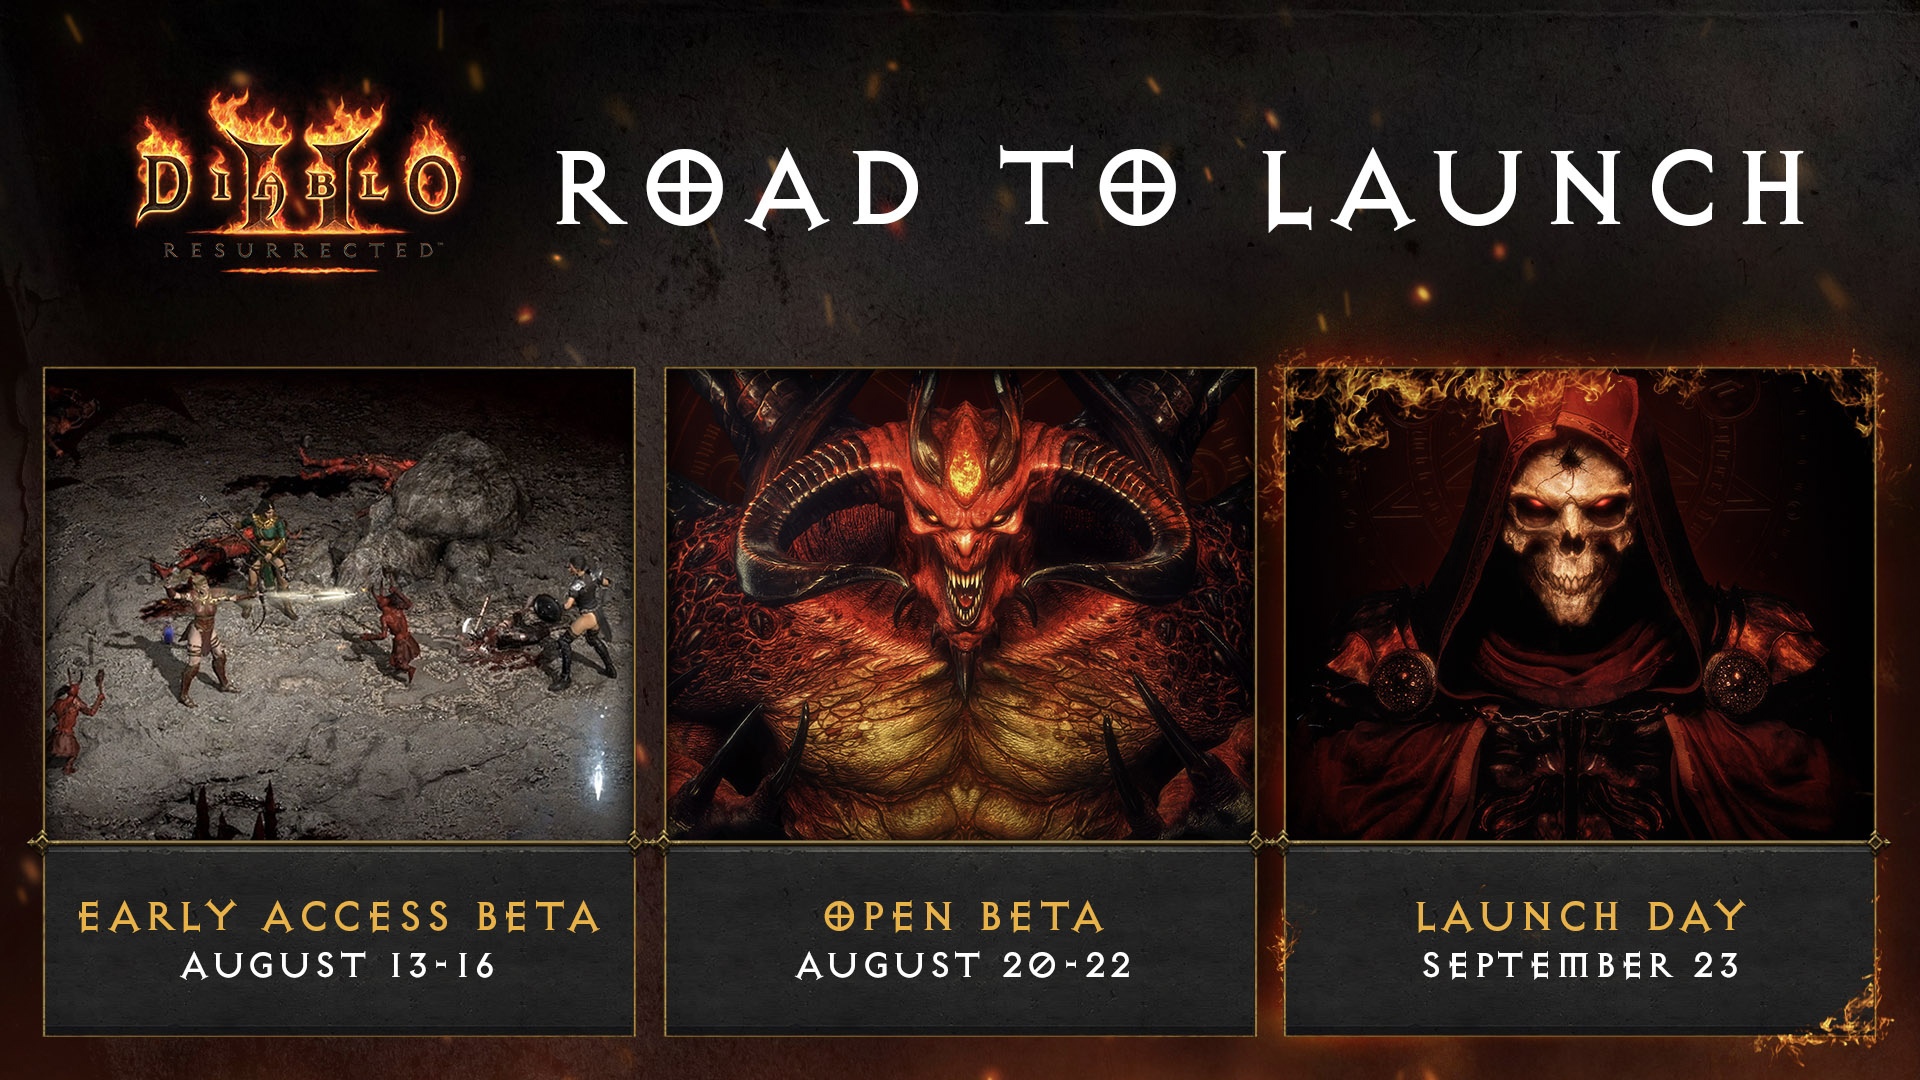 Бета-тестирование Diablo II: Resurrected начнется 13 августа. Играть можно будет бесплатно